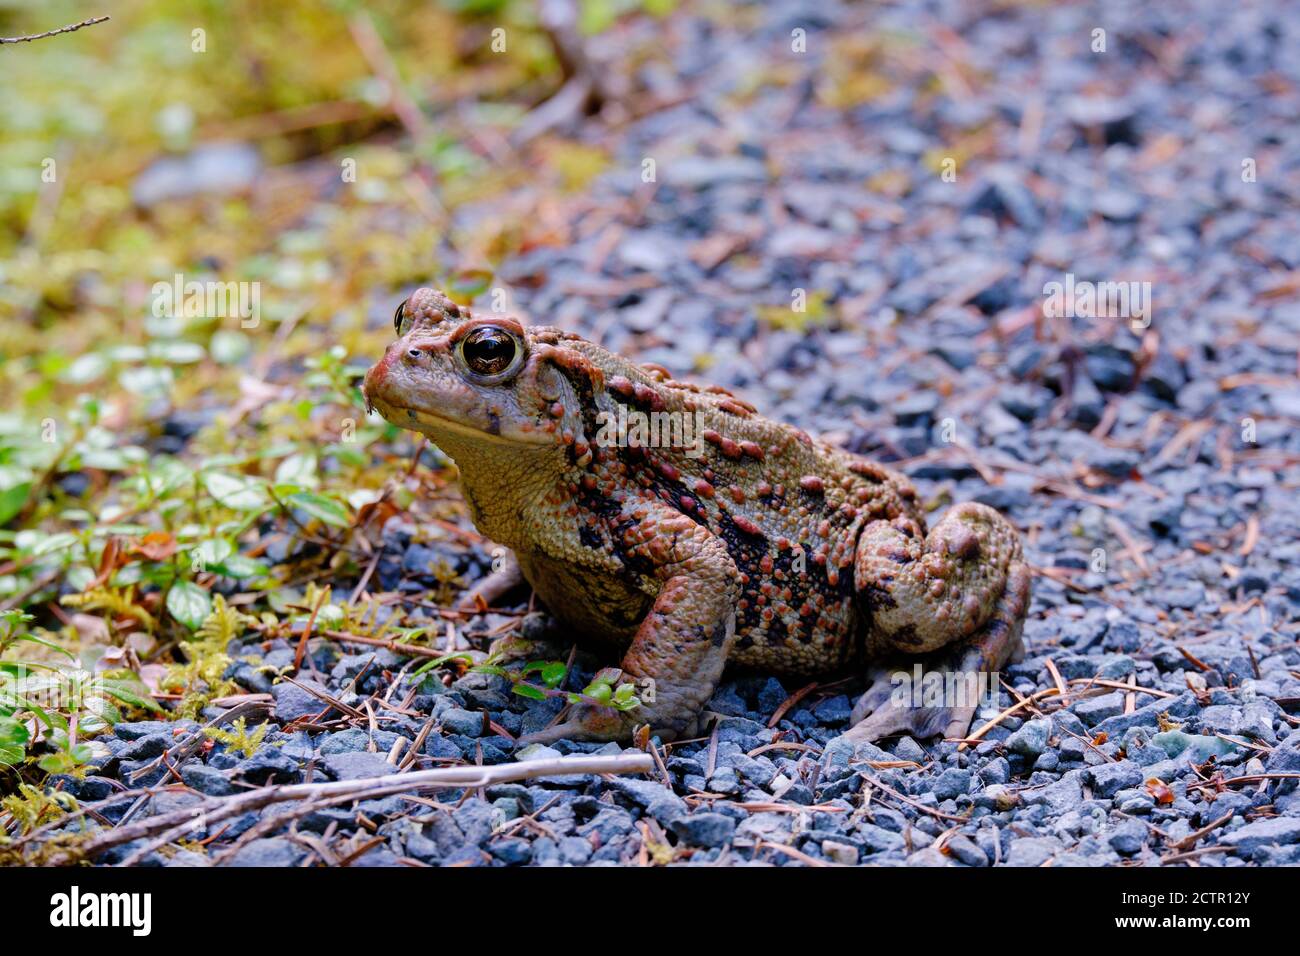 La bellezza è negli occhi... Il toad adulto si siede pazientemente sul percorso delle piccole pietre con la loro pelle chiazzata e blottosa mostrata nei particolari del primo piano. Foto Stock